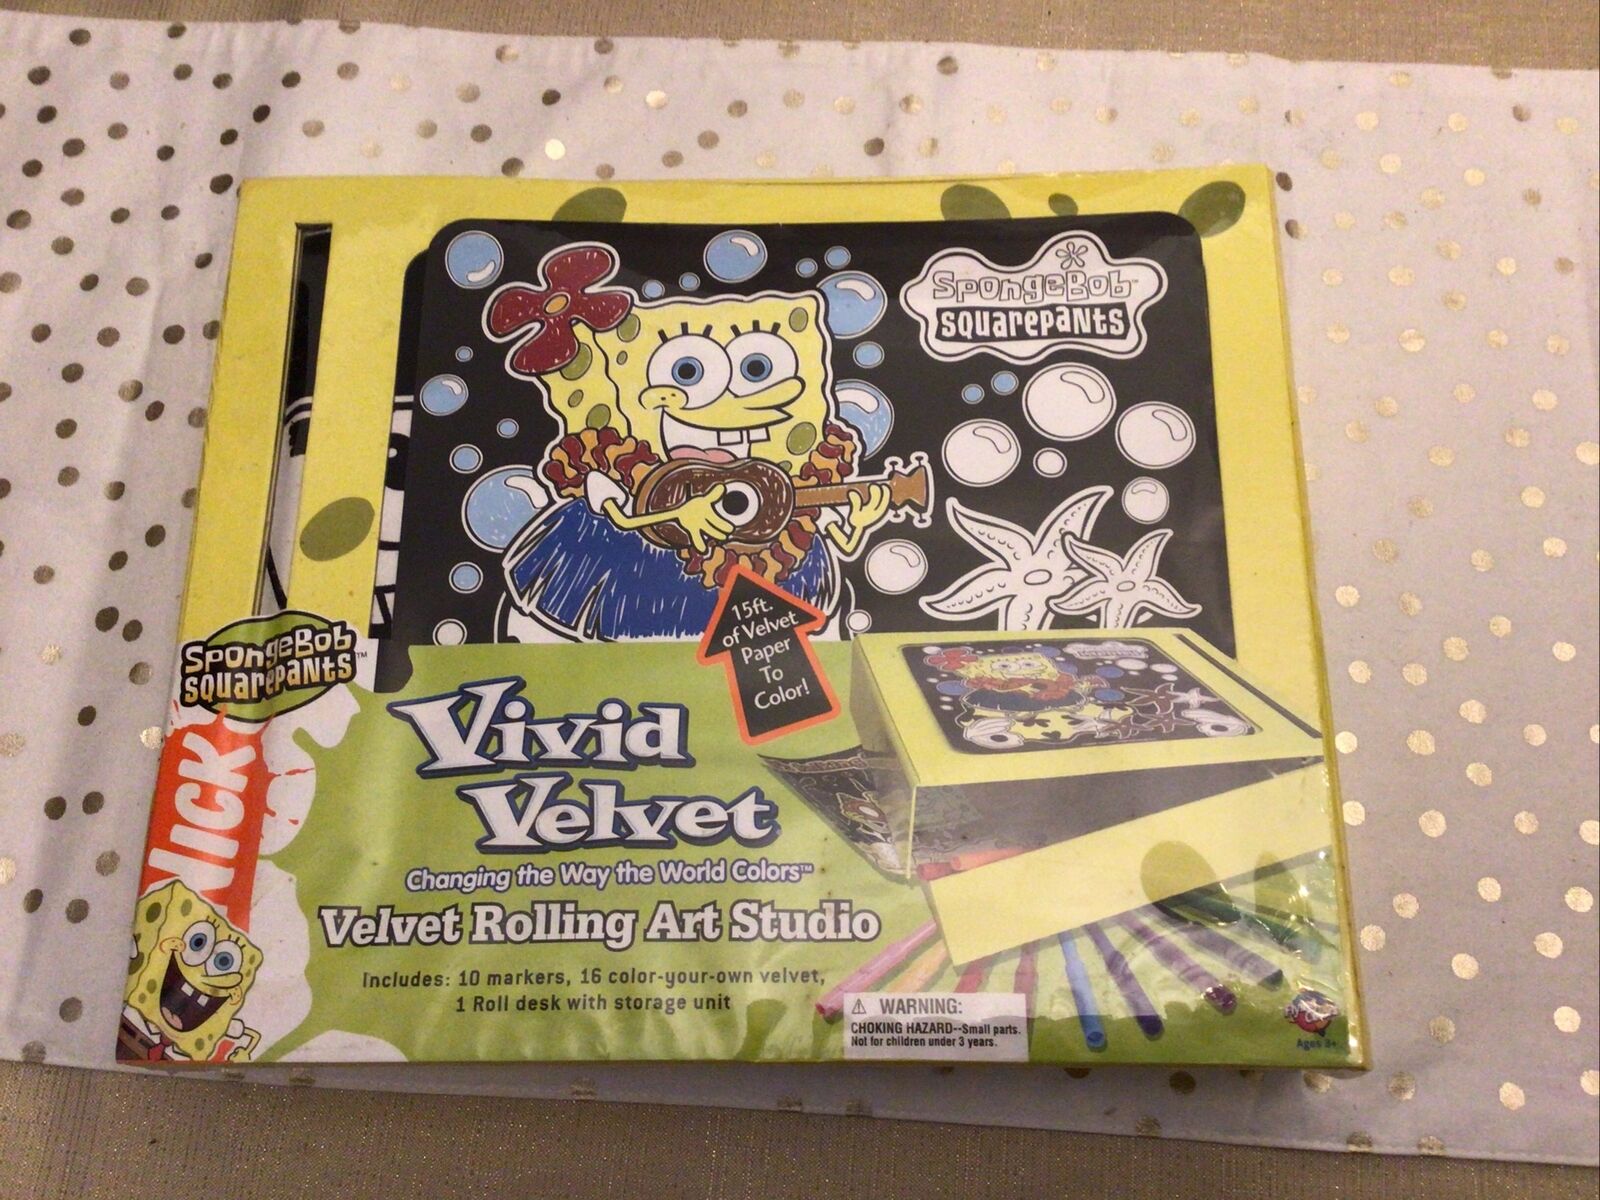 Vivid Velvet Spongebob Squarepants Velvet Rolling Art Studio Kit New In Box